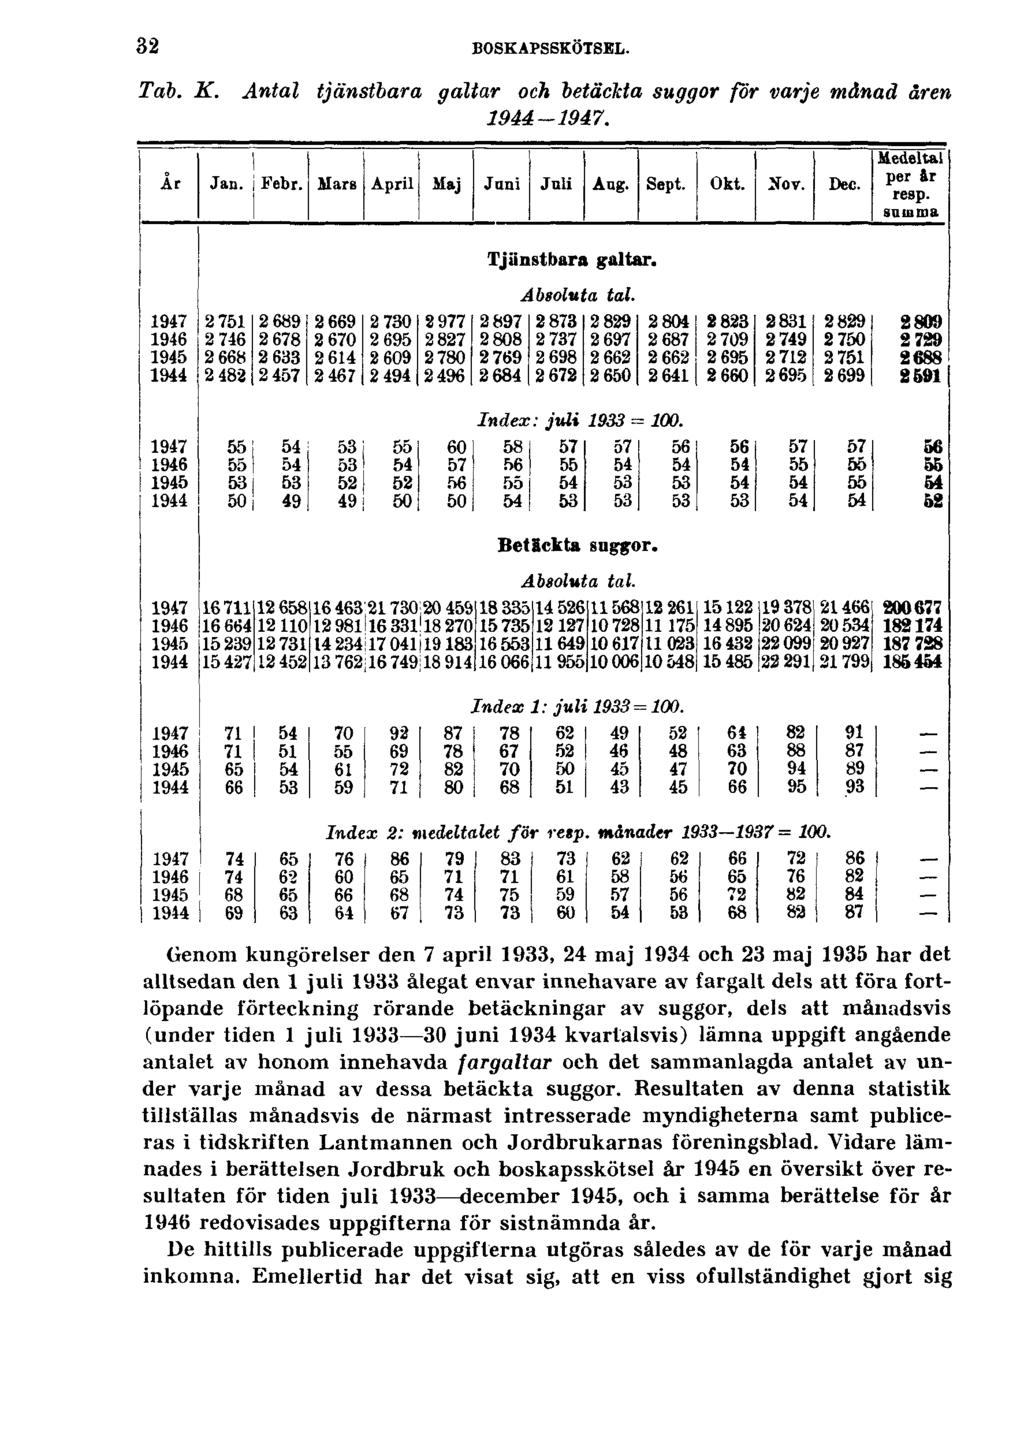 32 BOSKAPSSKÖTSEL. Tab. K. Antal tjänstbara galtar och betåckta suggor för varje månad åren 1944-1947.